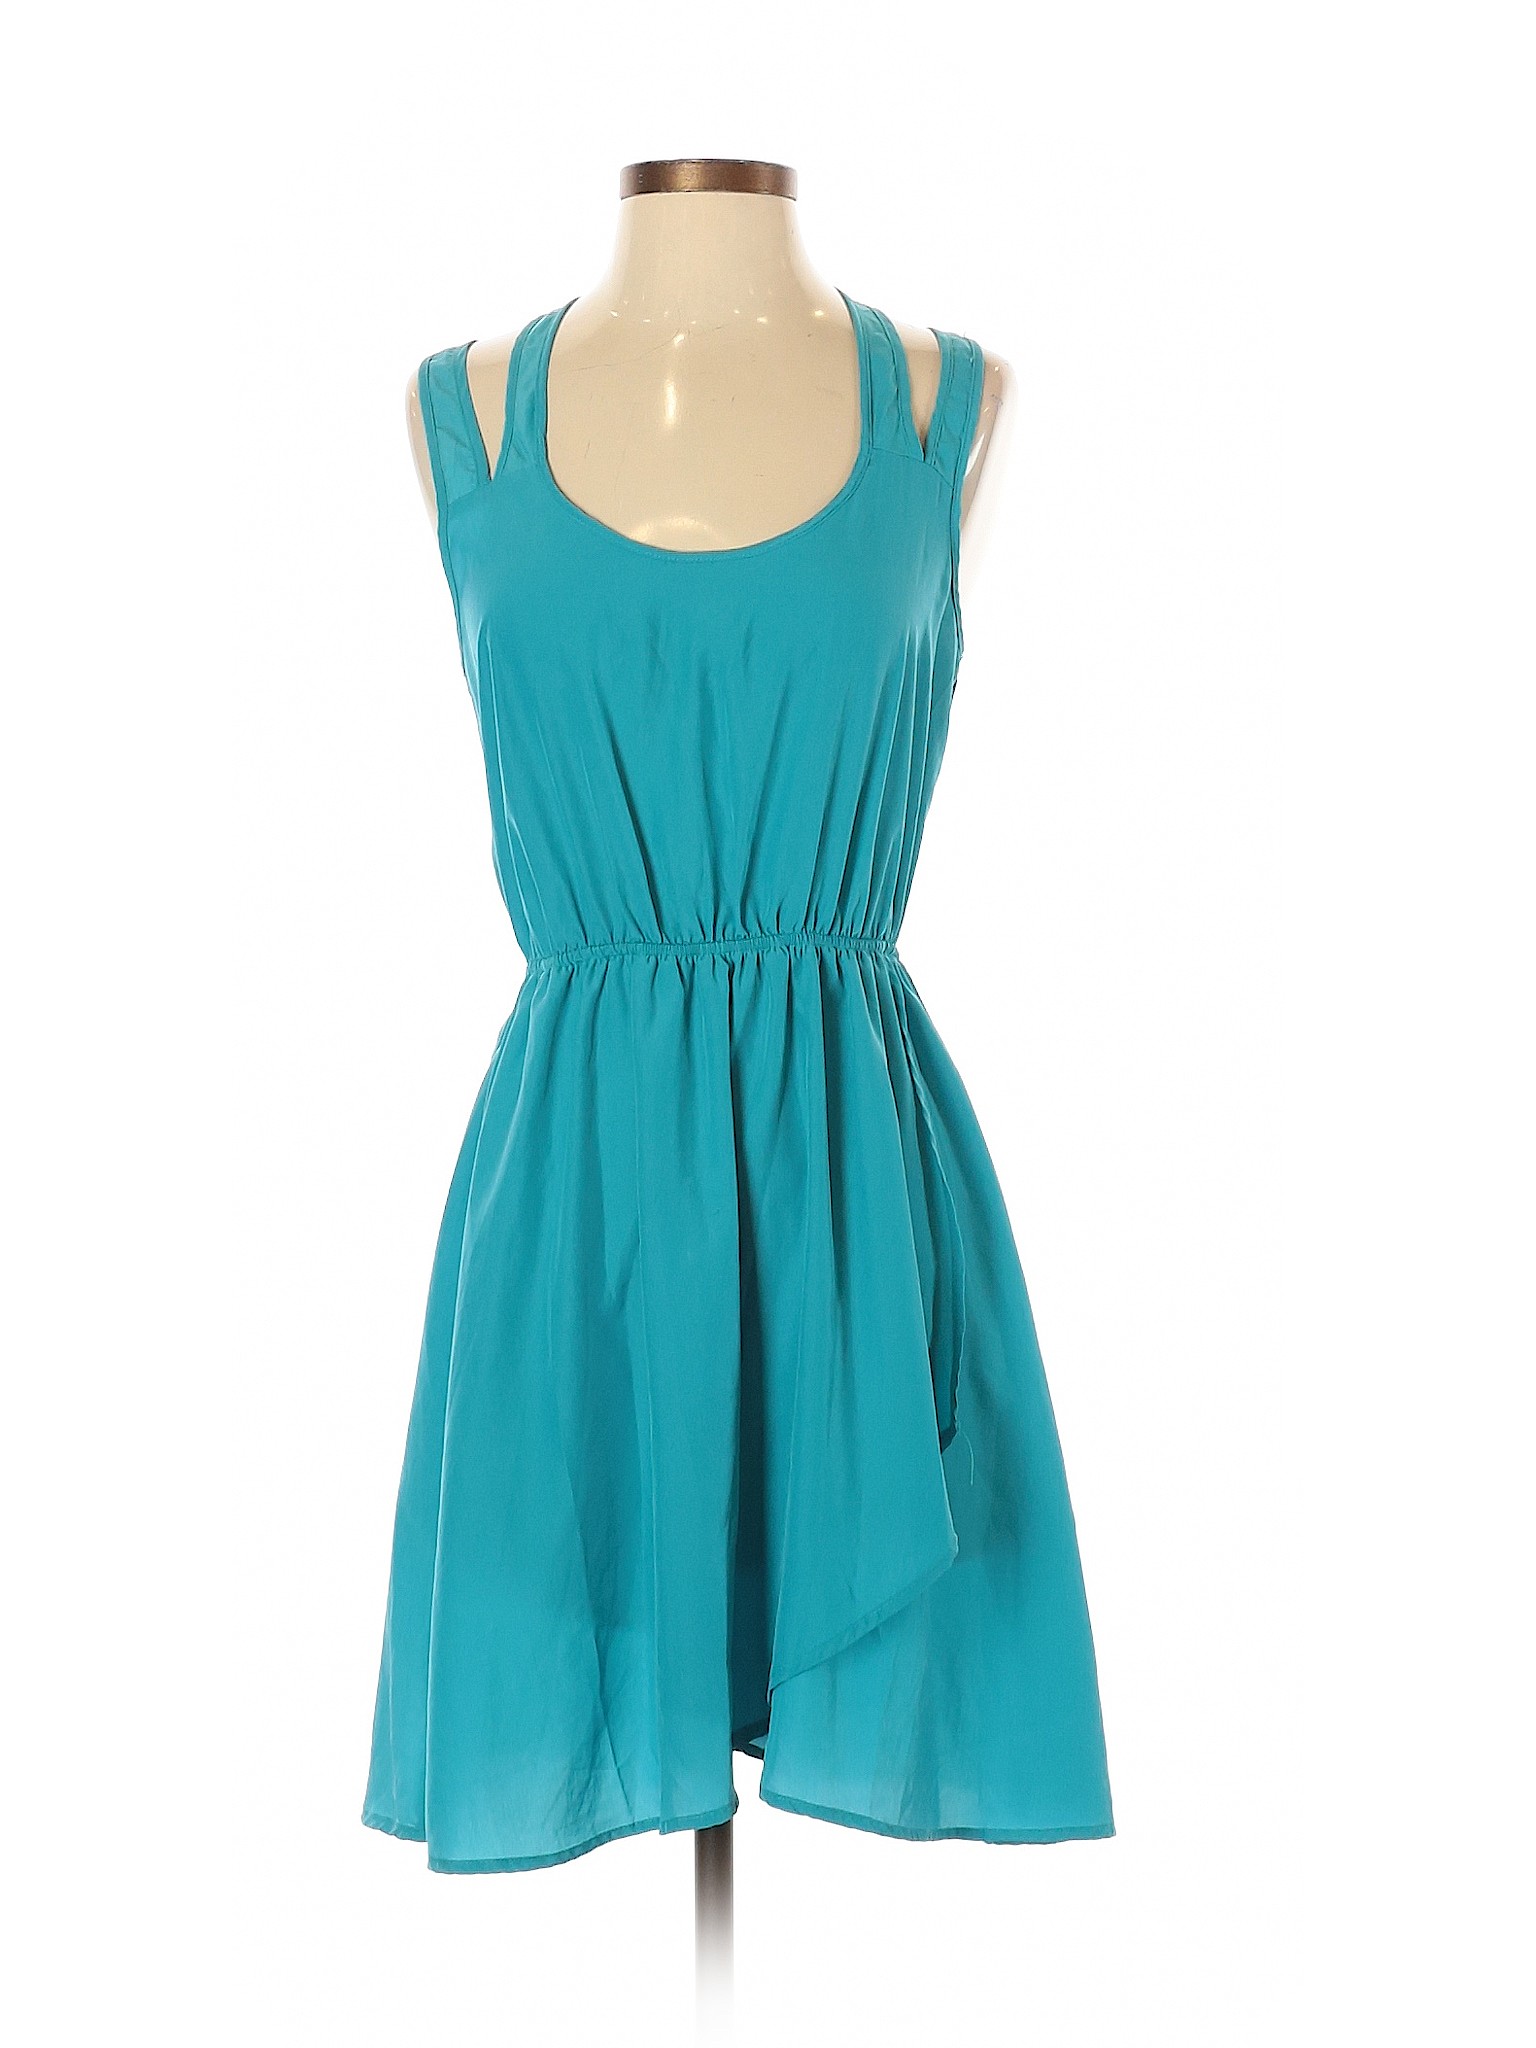 Love on a Hanger Women Blue Casual Dress S | eBay